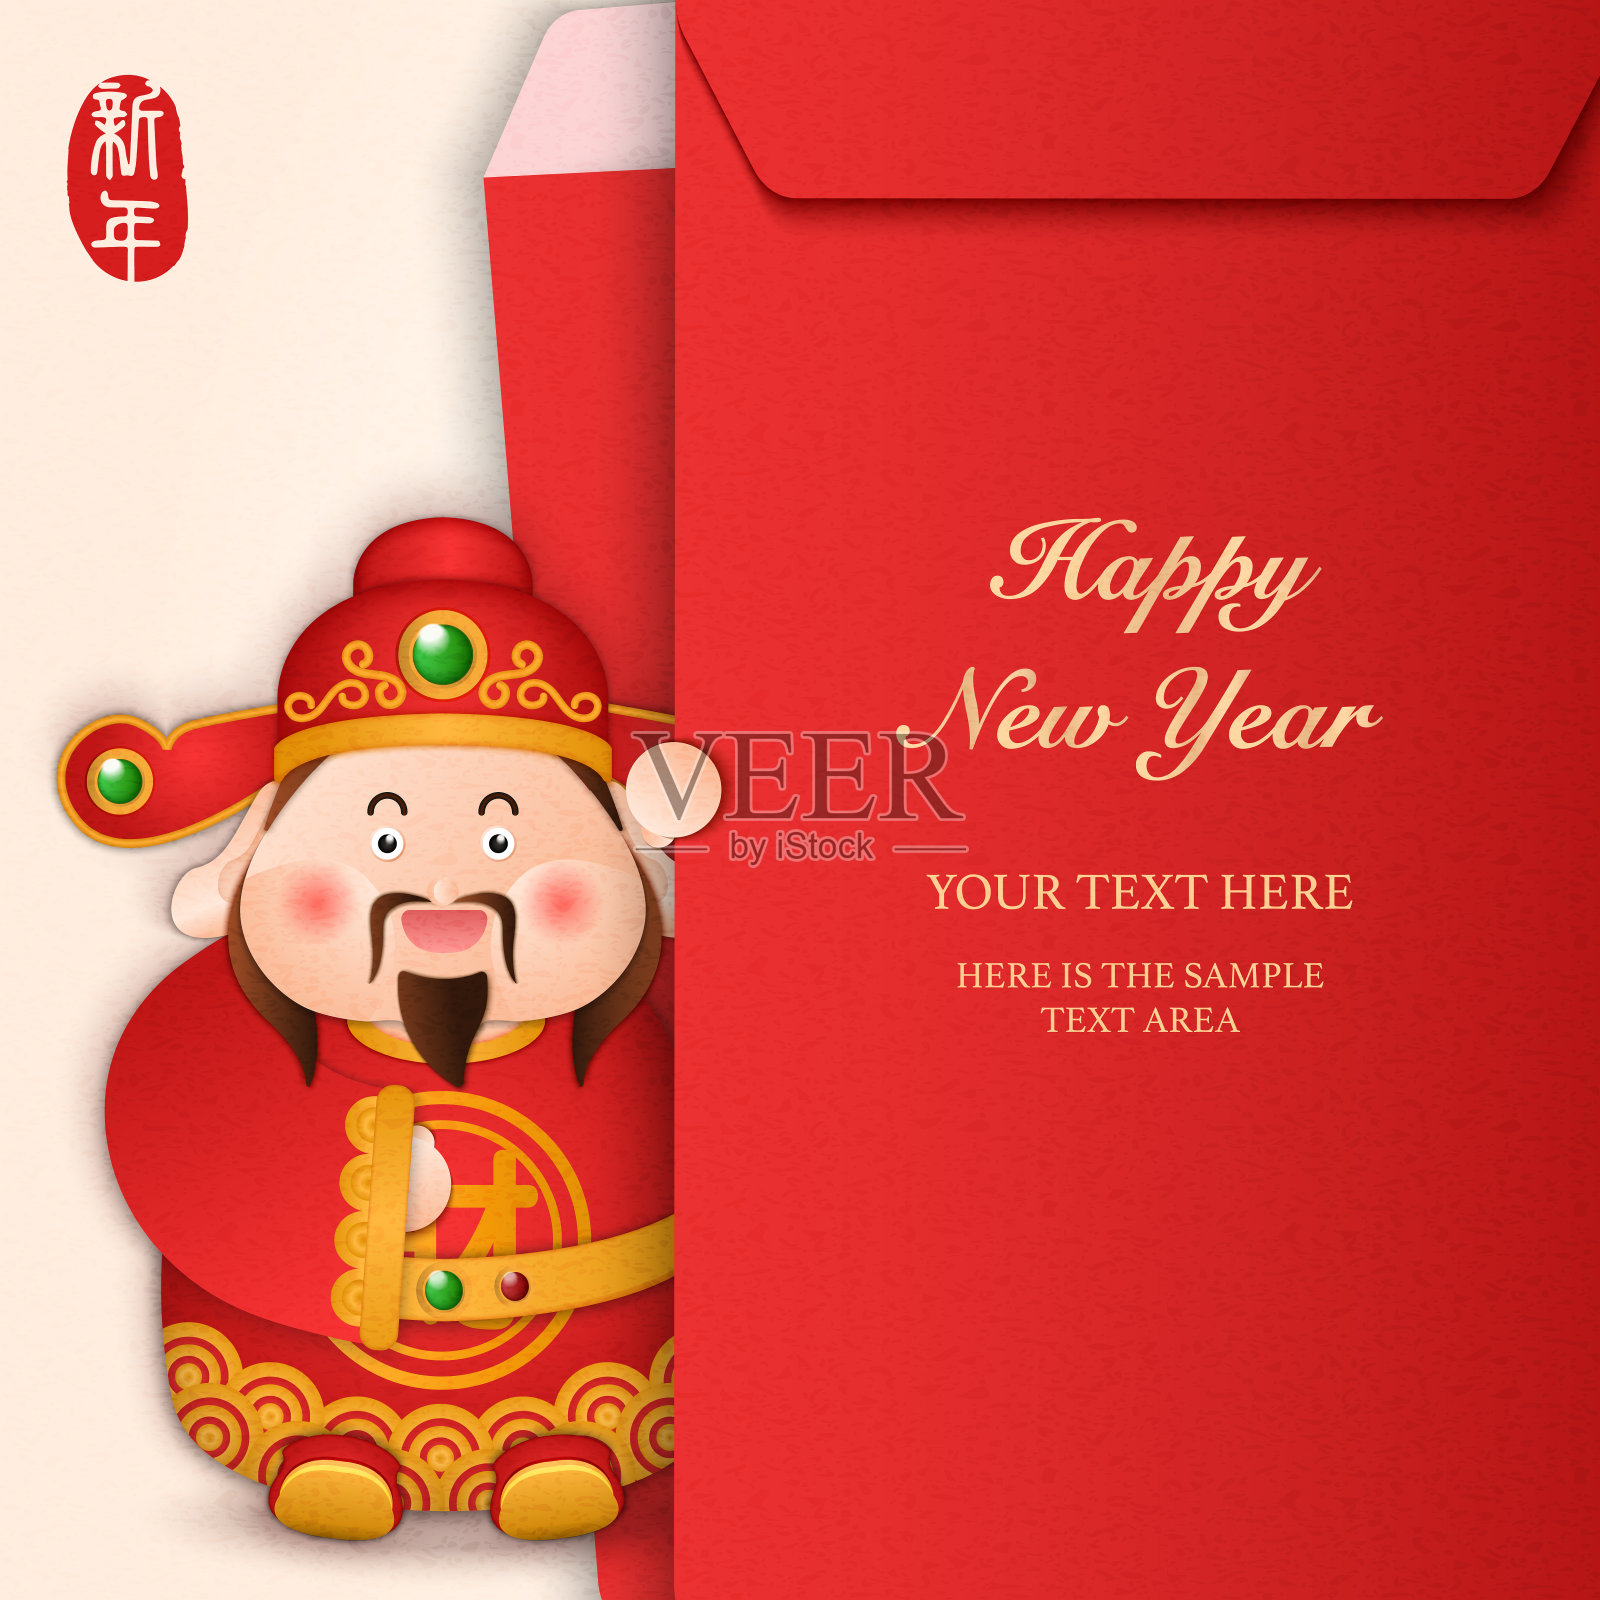 2020年春节快乐卡通可爱财神和红包模板。中文翻译:新年。设计模板素材